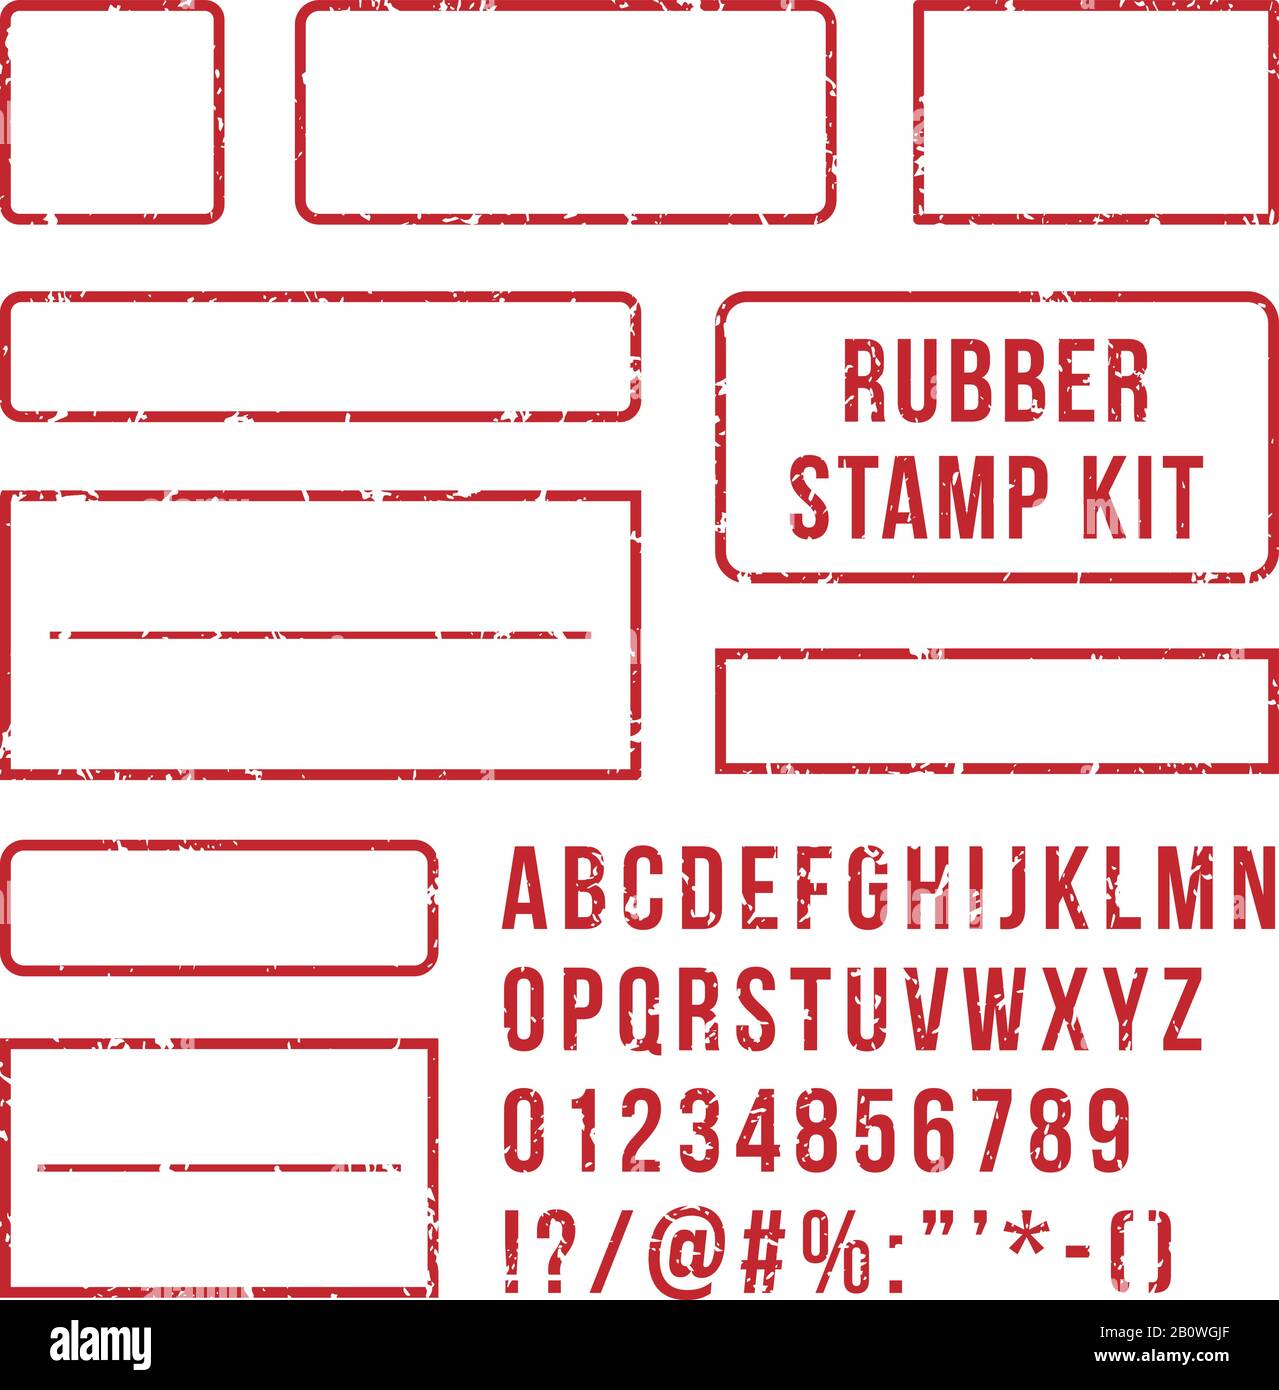 Stempelbuchstaben aus Gummi. Rote Stempel Rahmen- und Briefdrucksymbole mit Schriftnummern. Markenset Vektor-Satz Stock Vektor